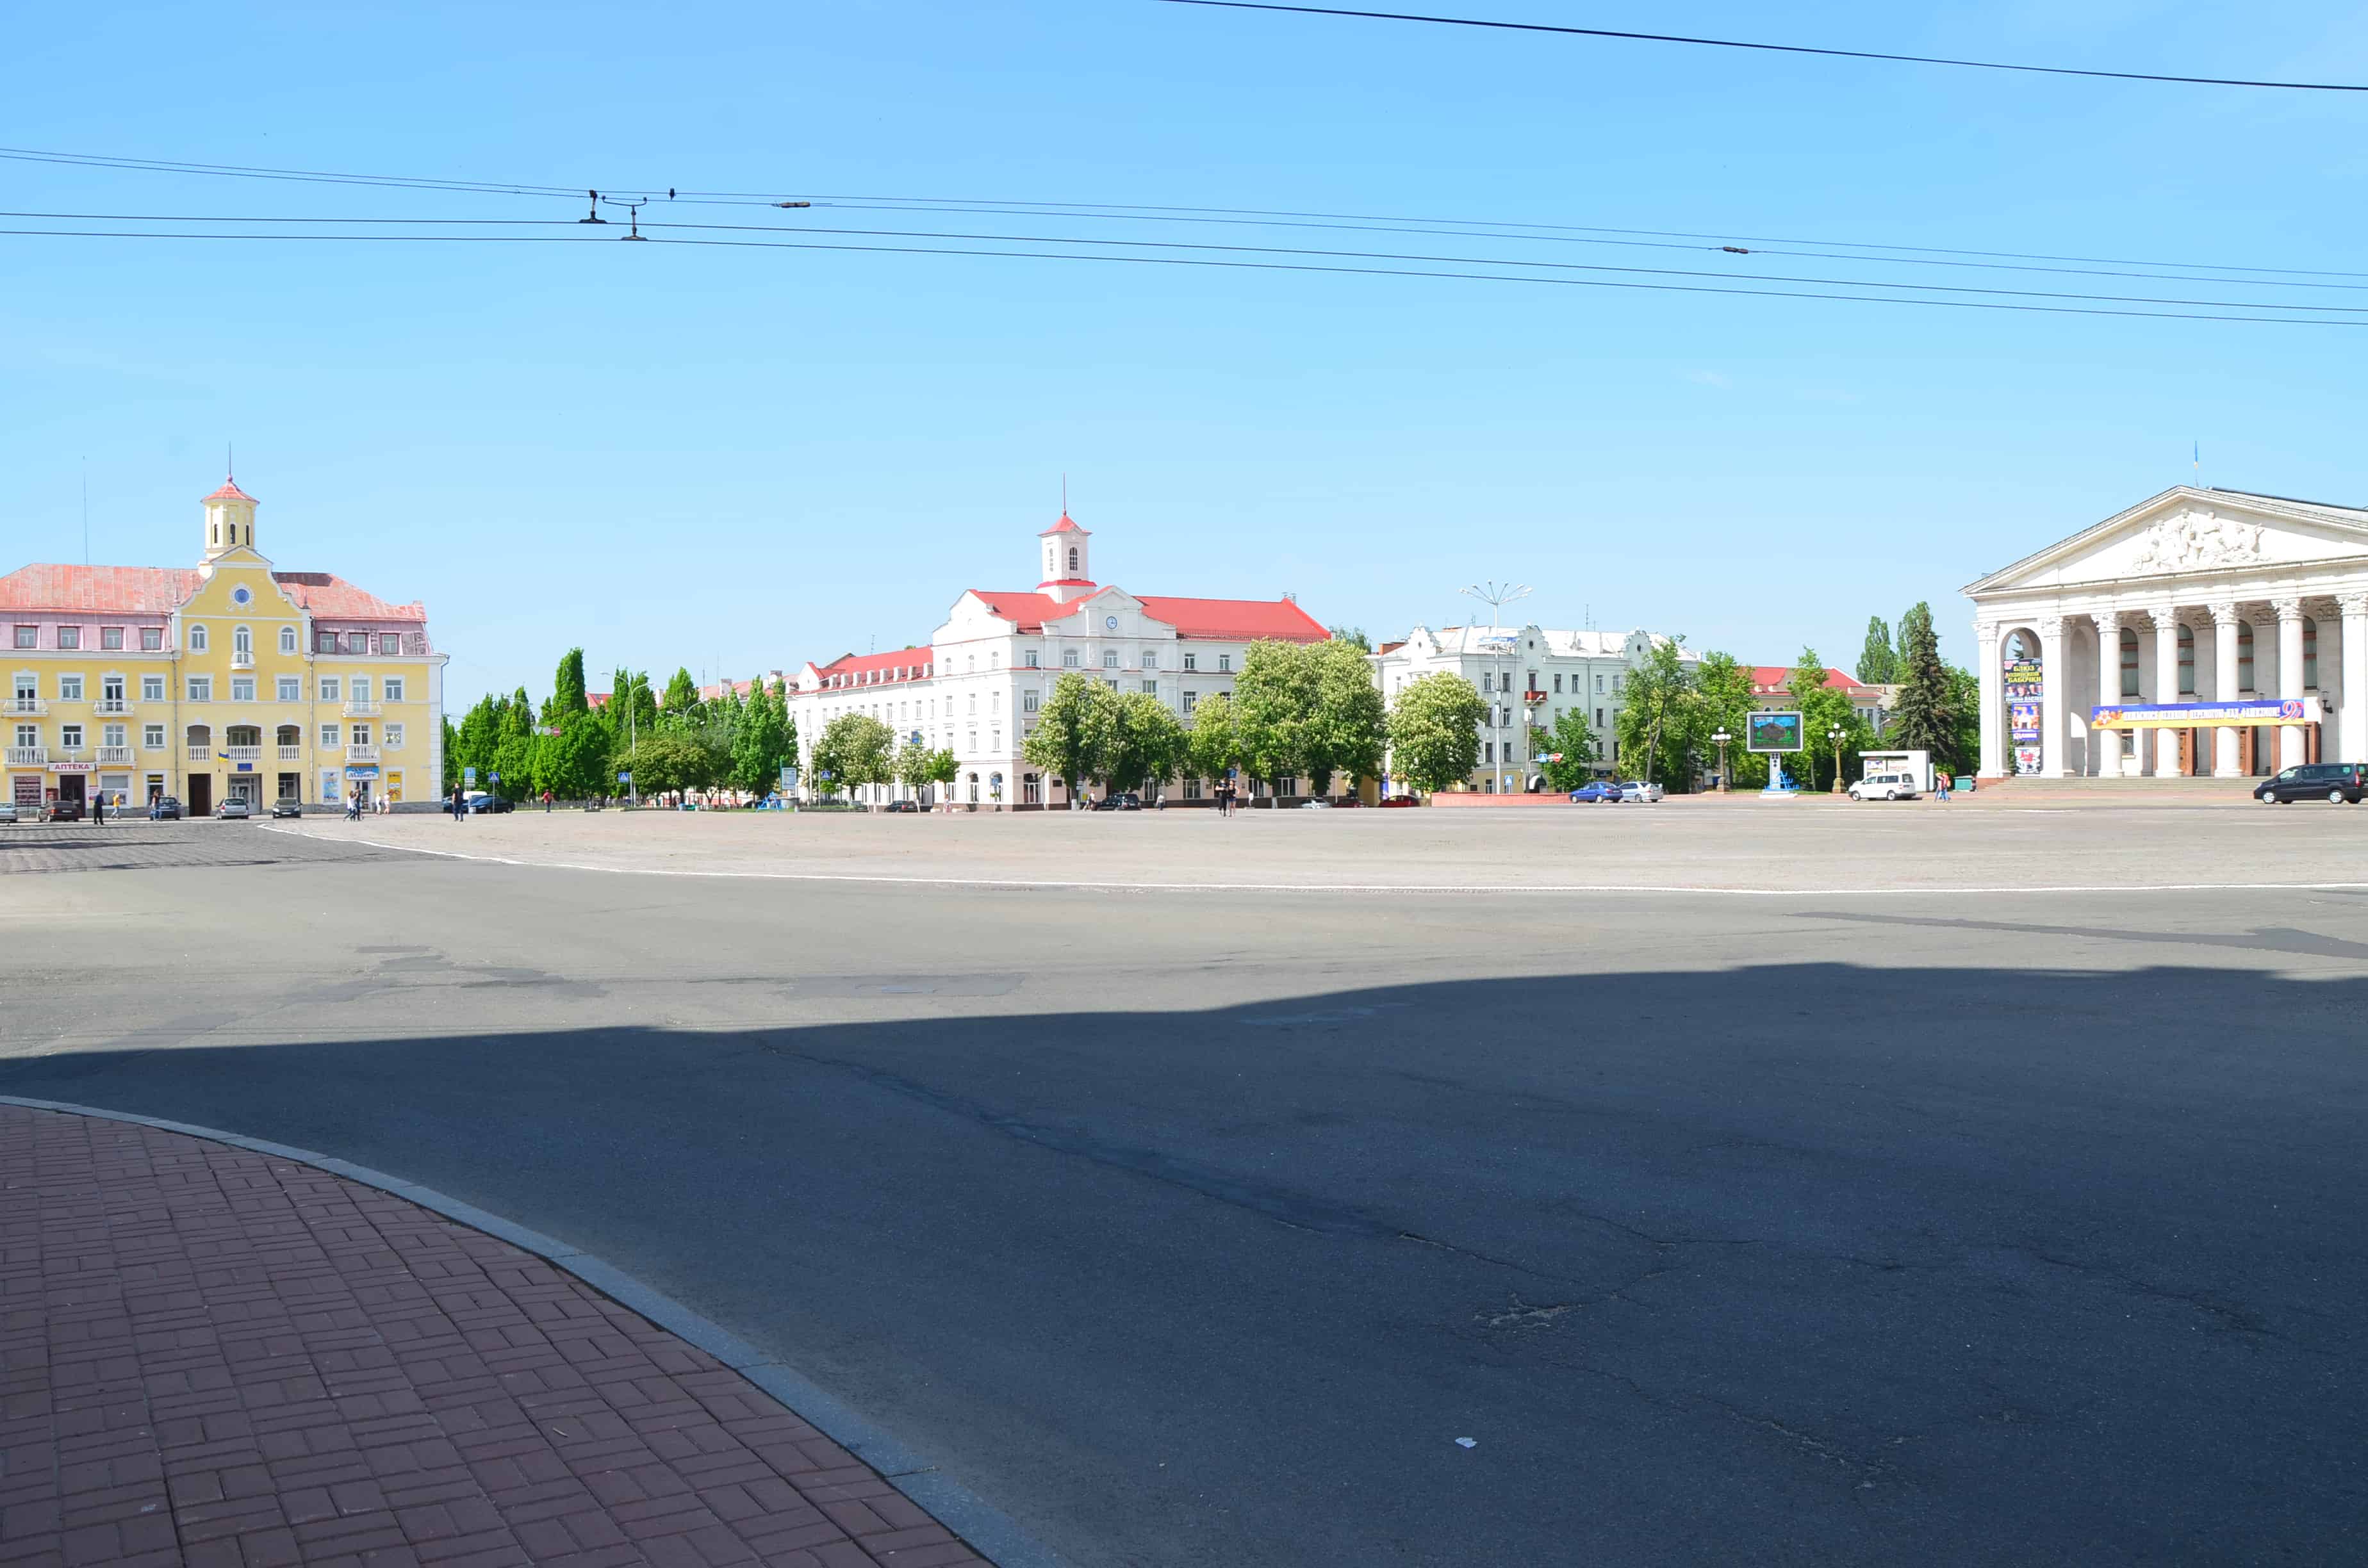 Krasna Square in Chernihiv, Ukraine